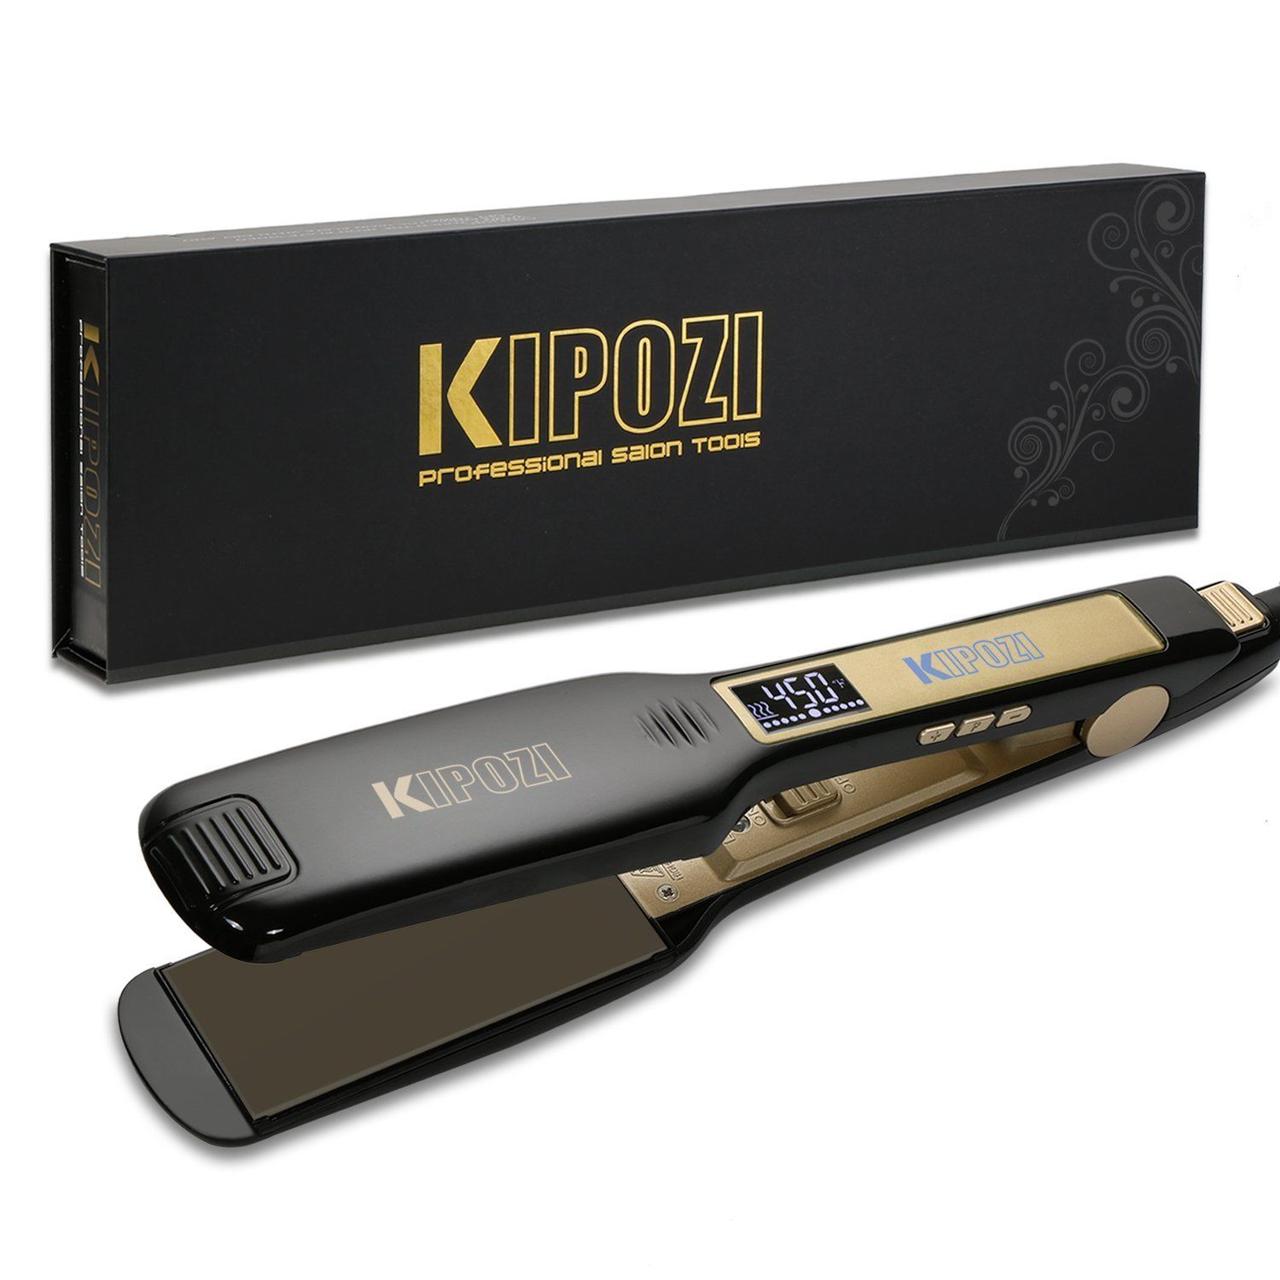 Kipozi Професійна прасочка для кератинового випрямлення волосся з титановими пластинами і дисплеєм